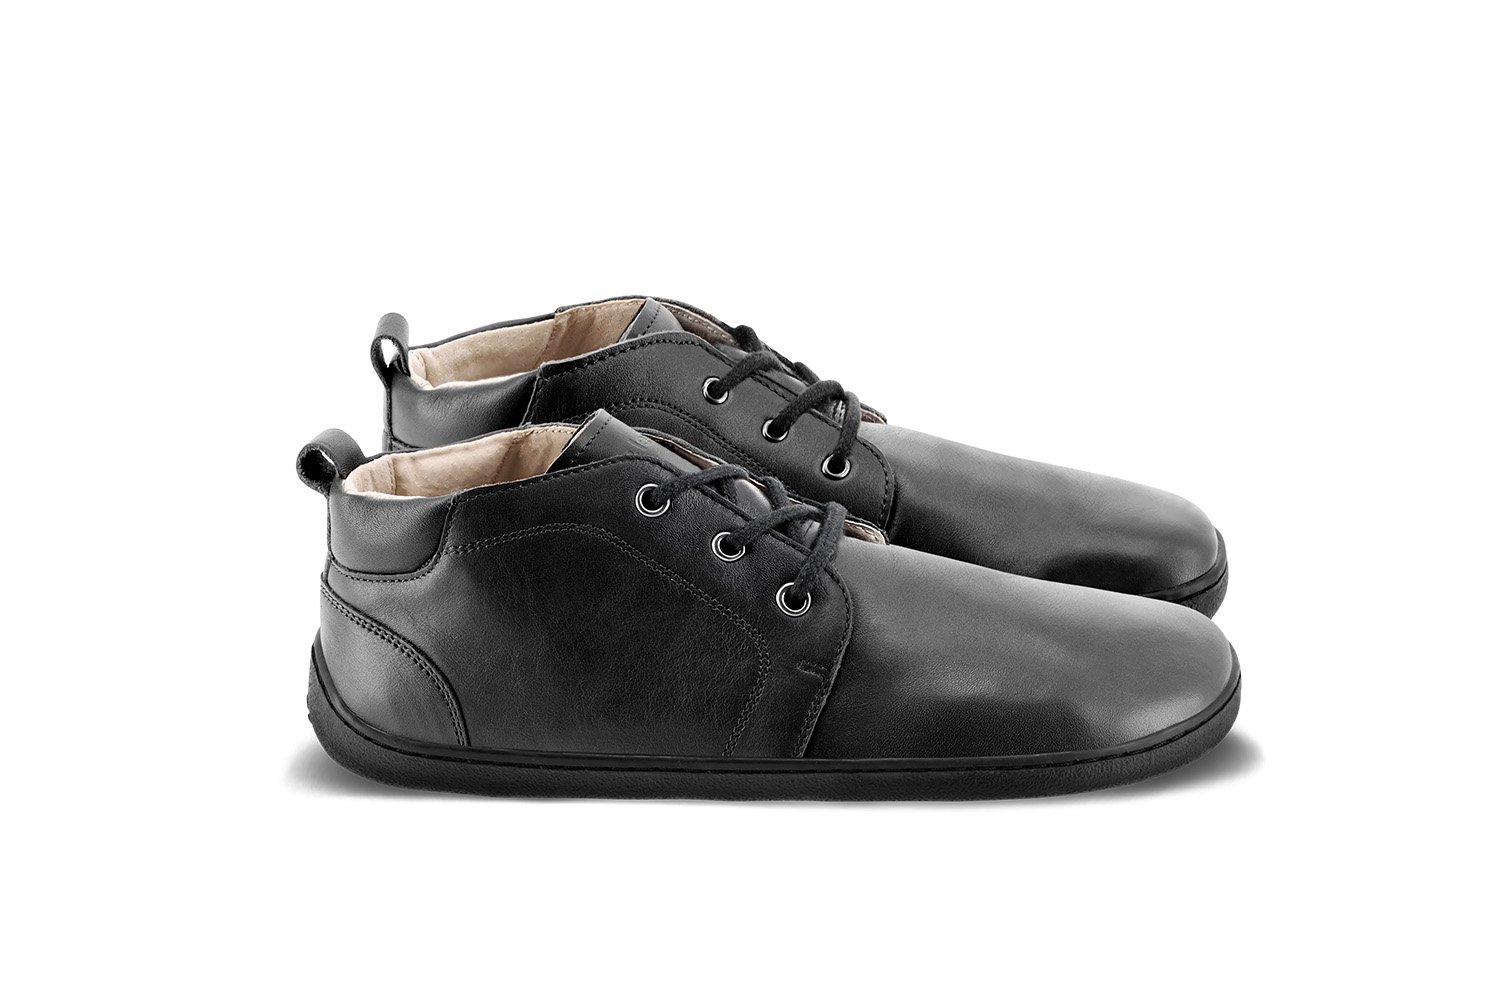 Vintage Authentic Mens Shoes Black Mens Dress Shoes Size EU40